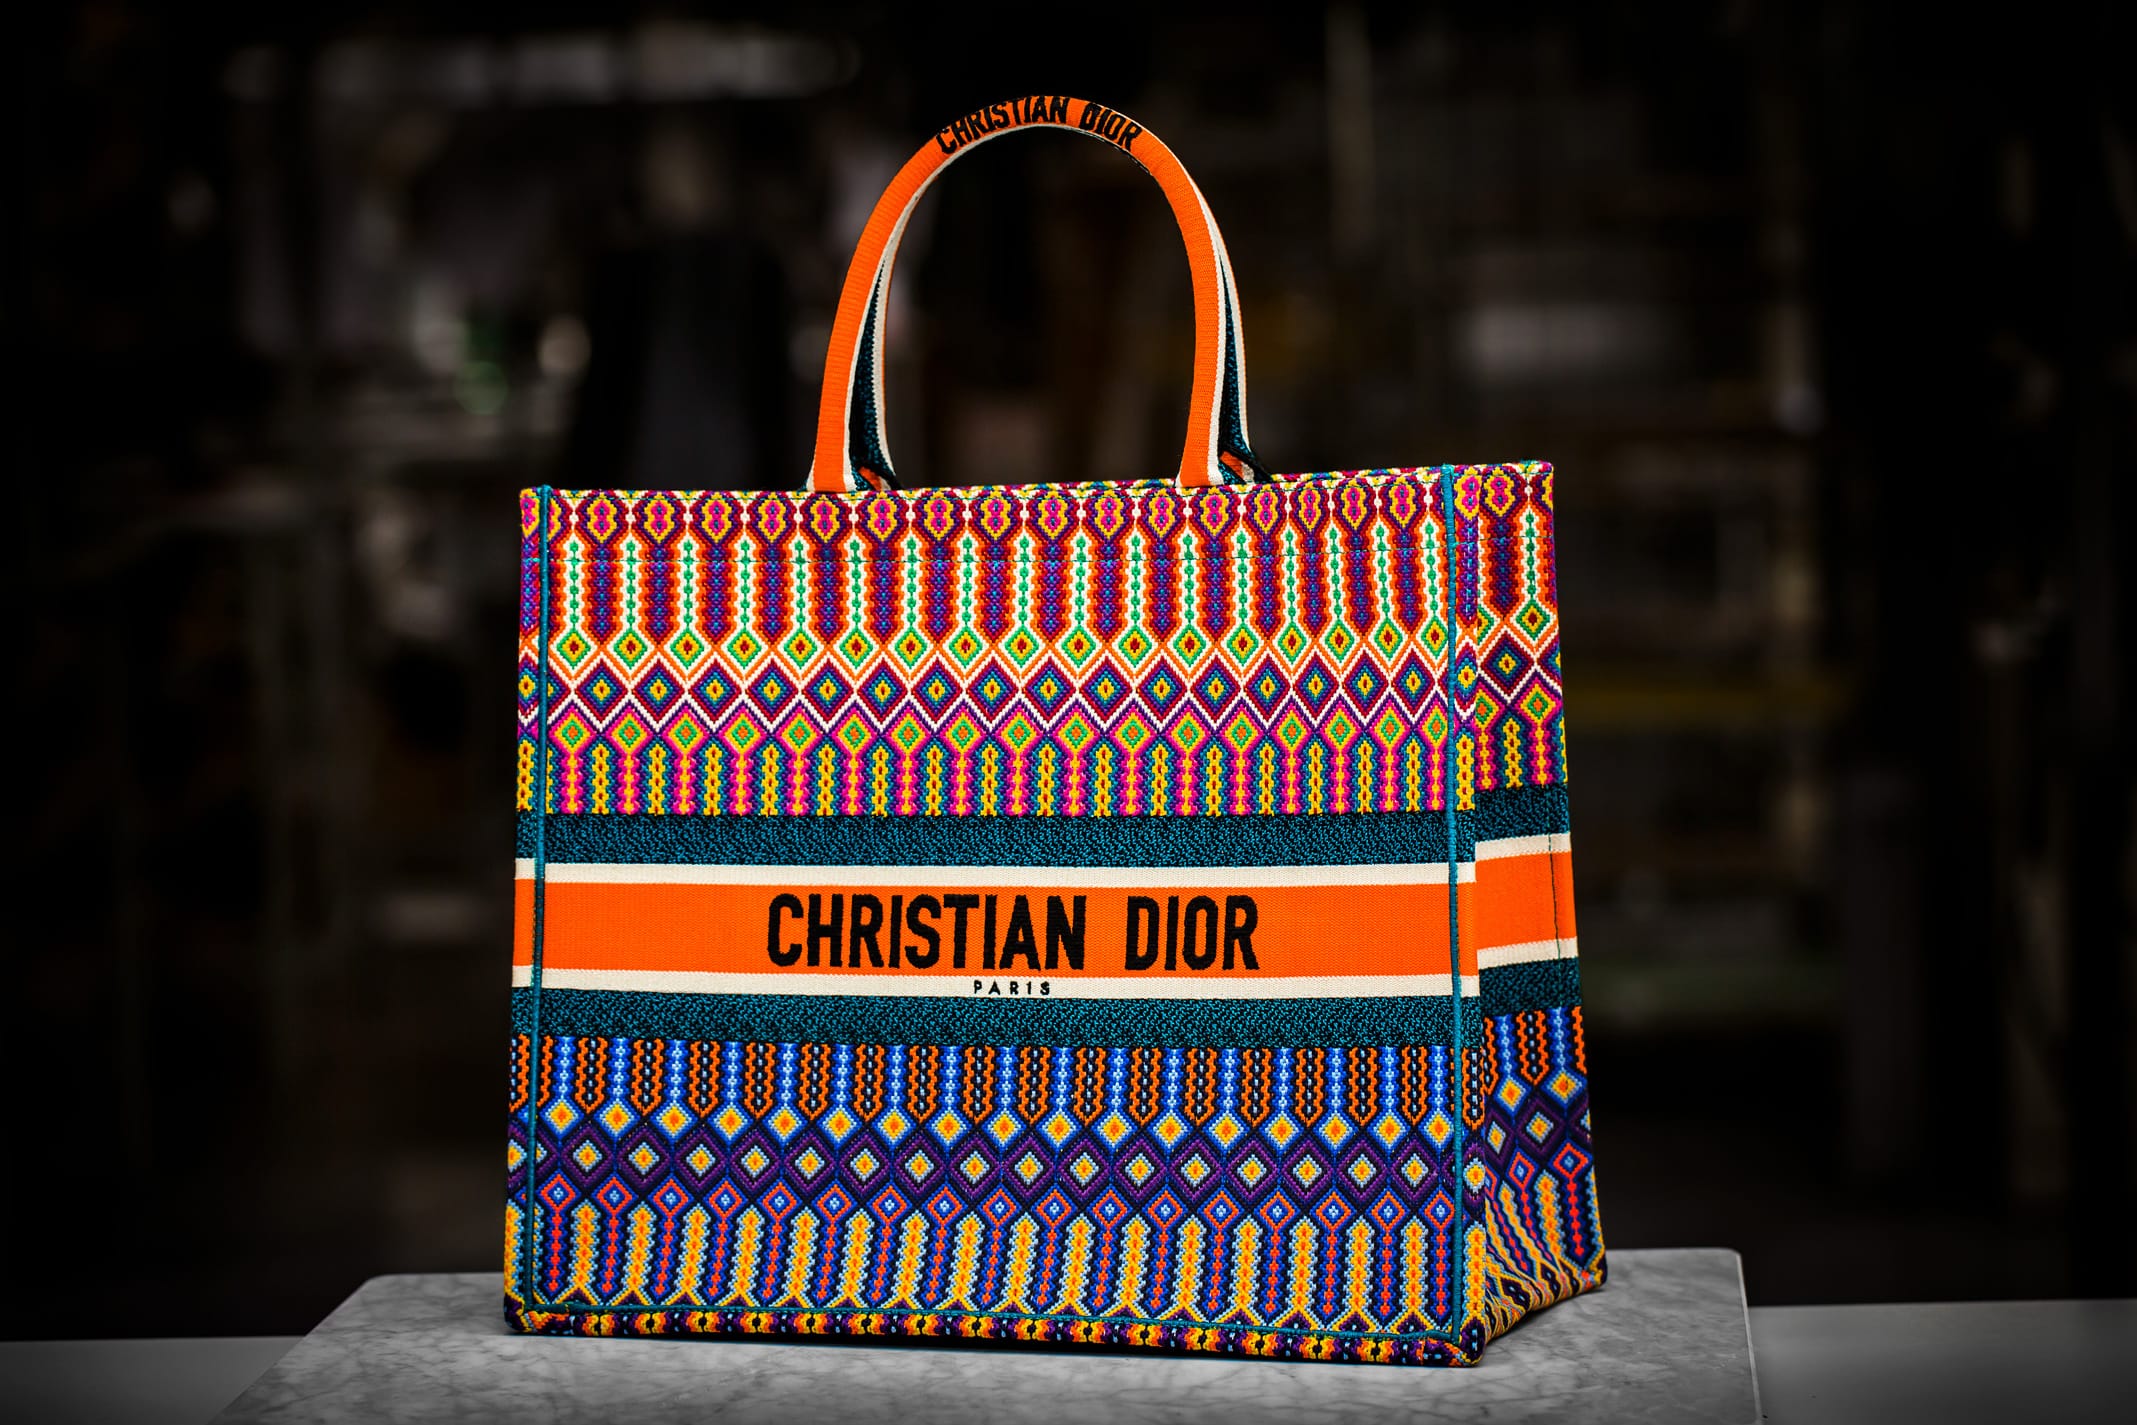 christian dior big bag, OFF 71%,Buy!